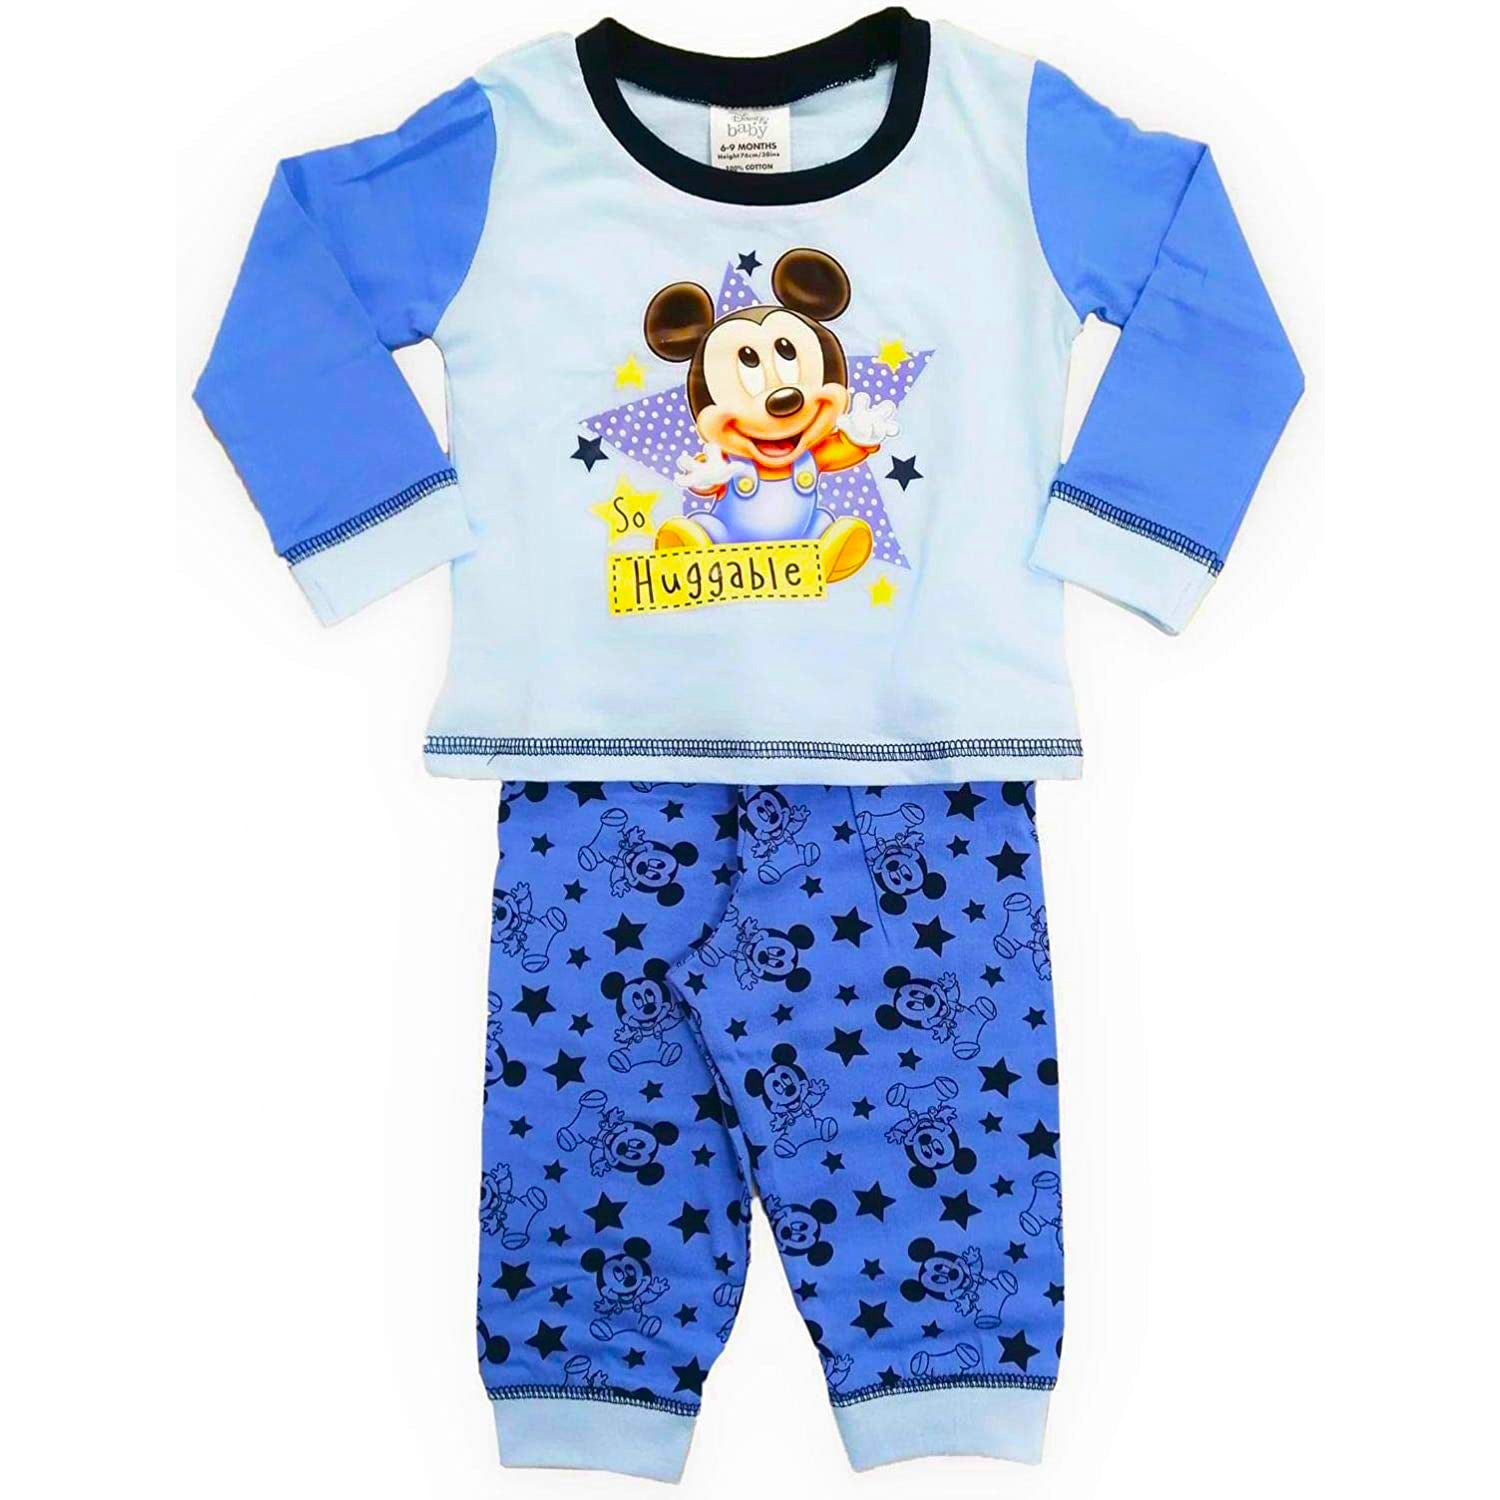 Disney Baby Pyjamas Mickey Mouse So Huggable 2 Piece Set